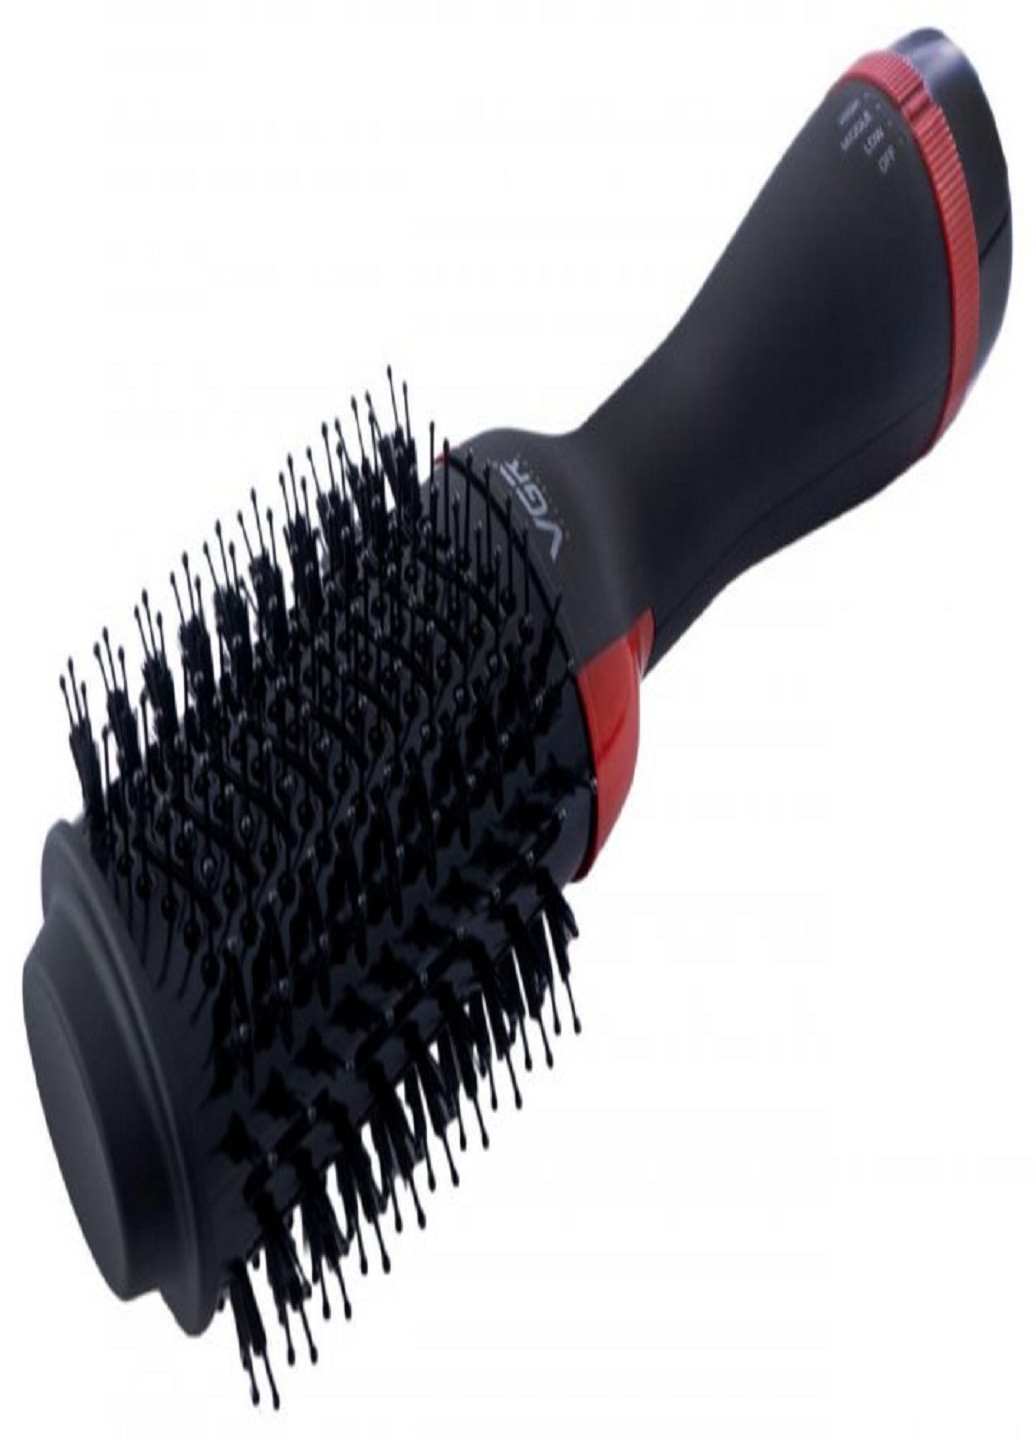 Фен-щетка для волос V-416 мультистайлер с расческой 1000 Вт Черный VGR (254110774)